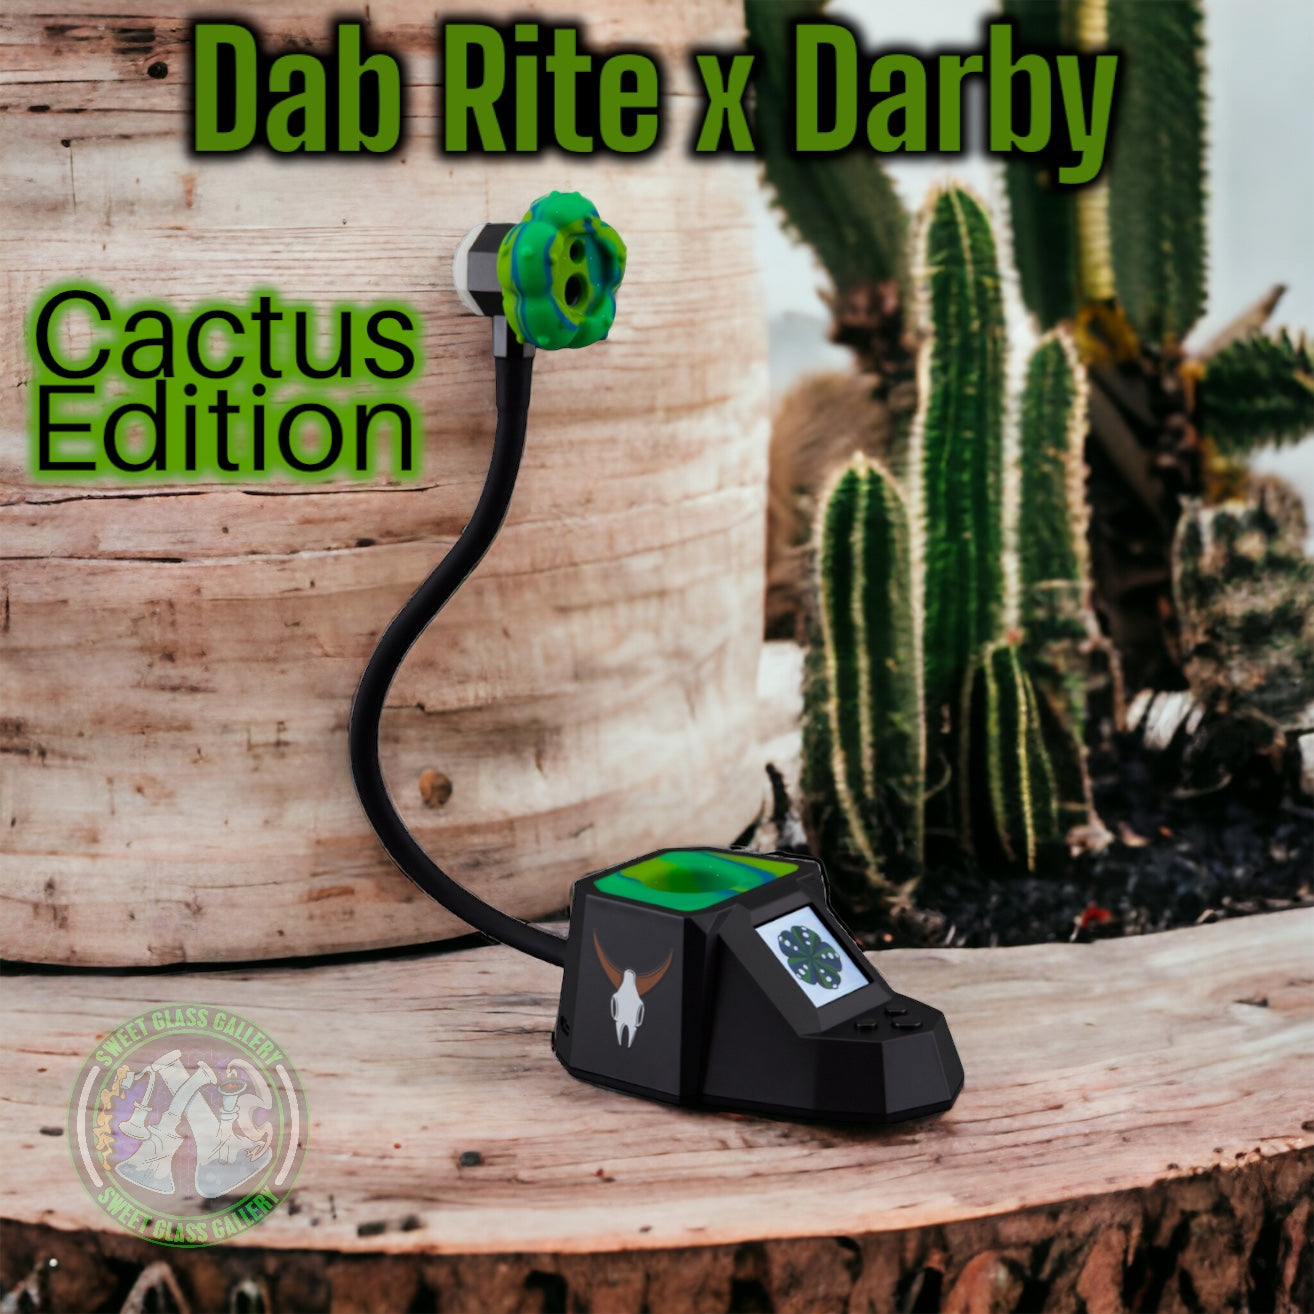 DabRite x Darby - Dab Rite Pro (Cactus Edition)